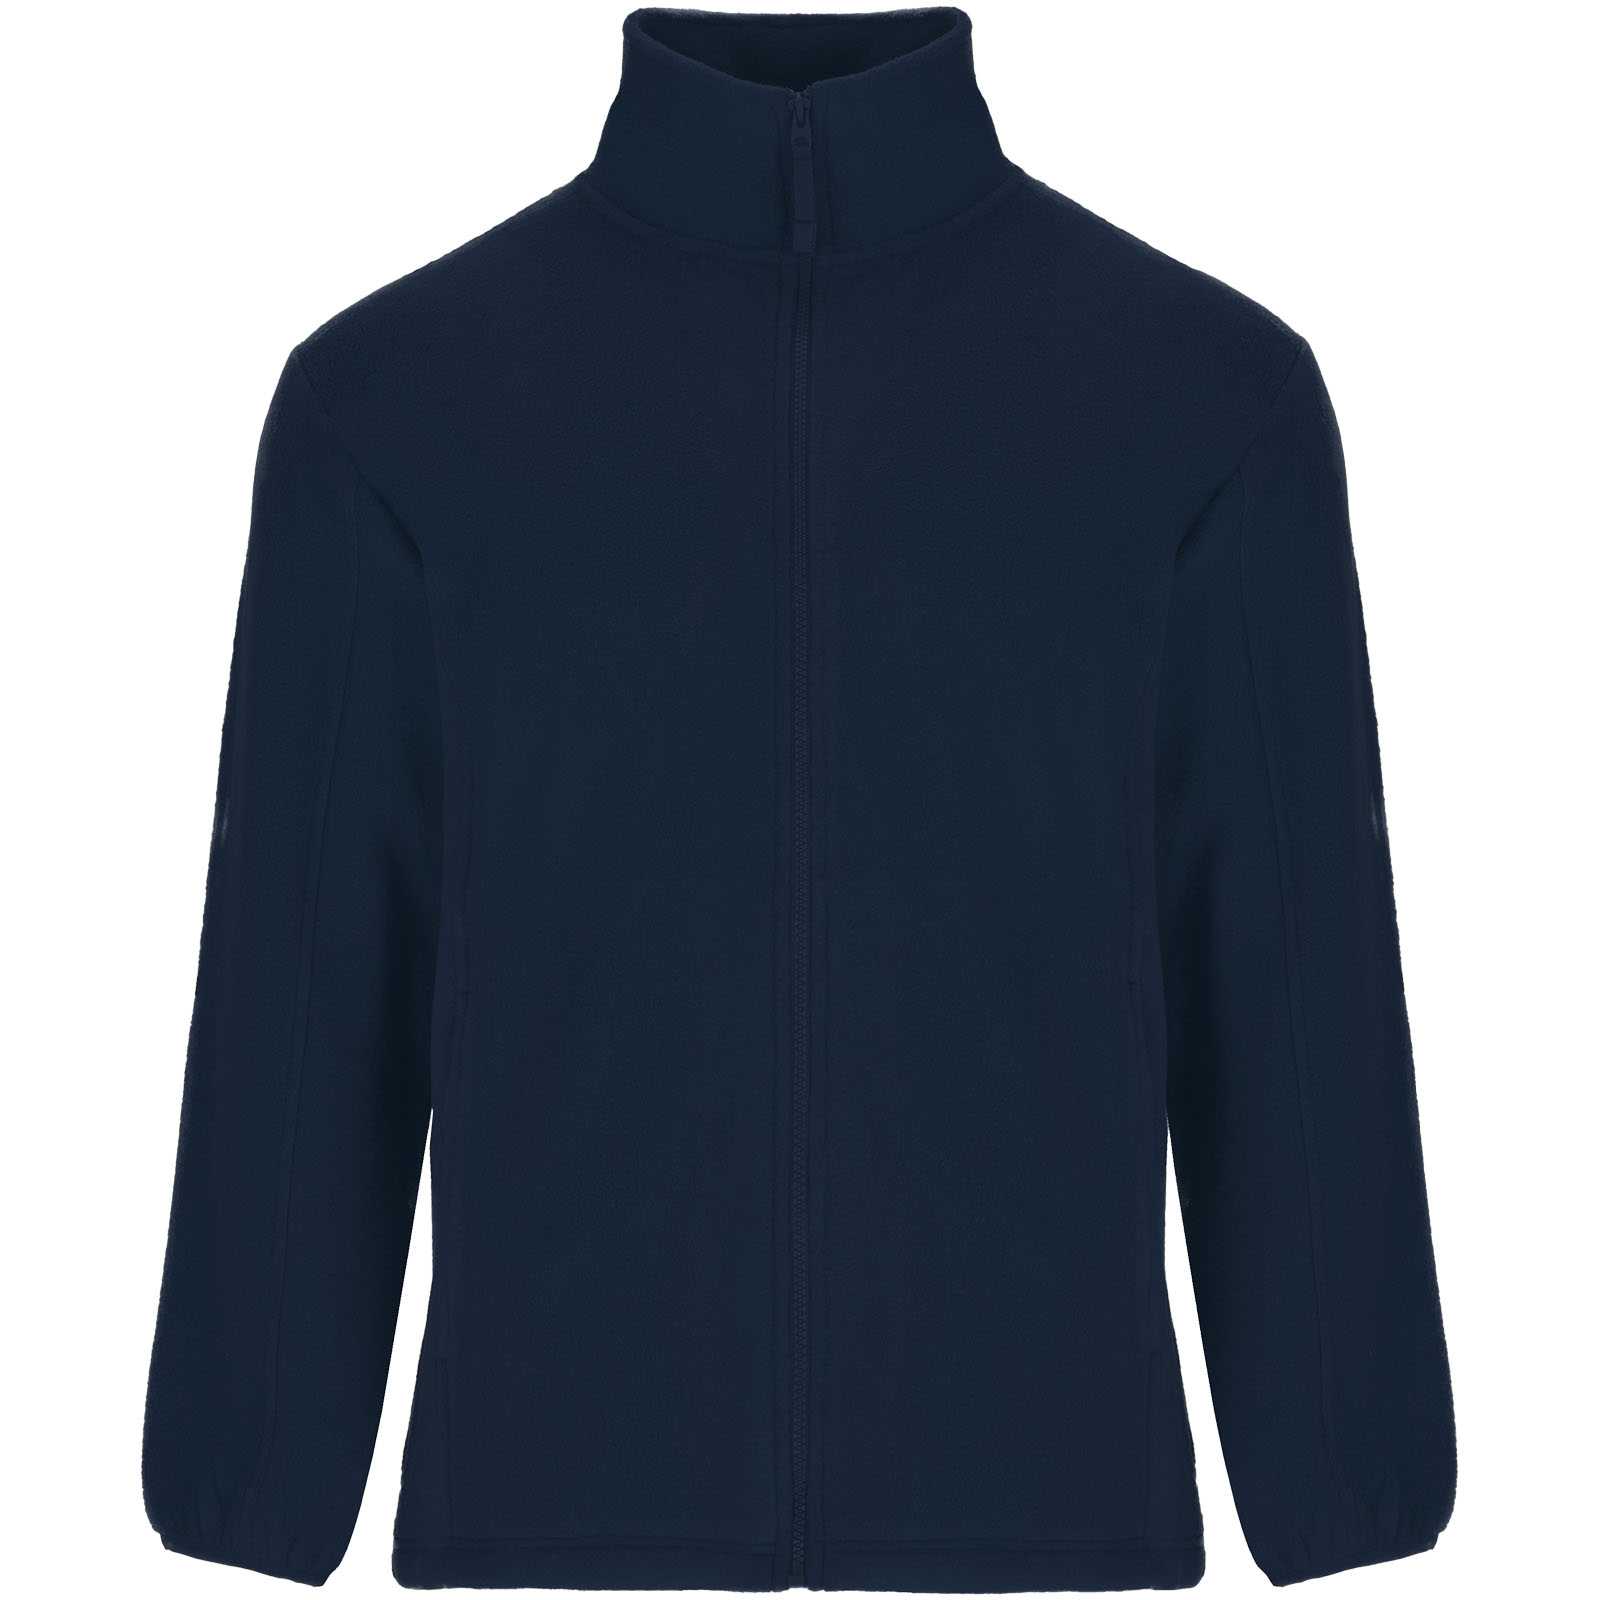 Fleece - Artic men's full zip fleece jacket